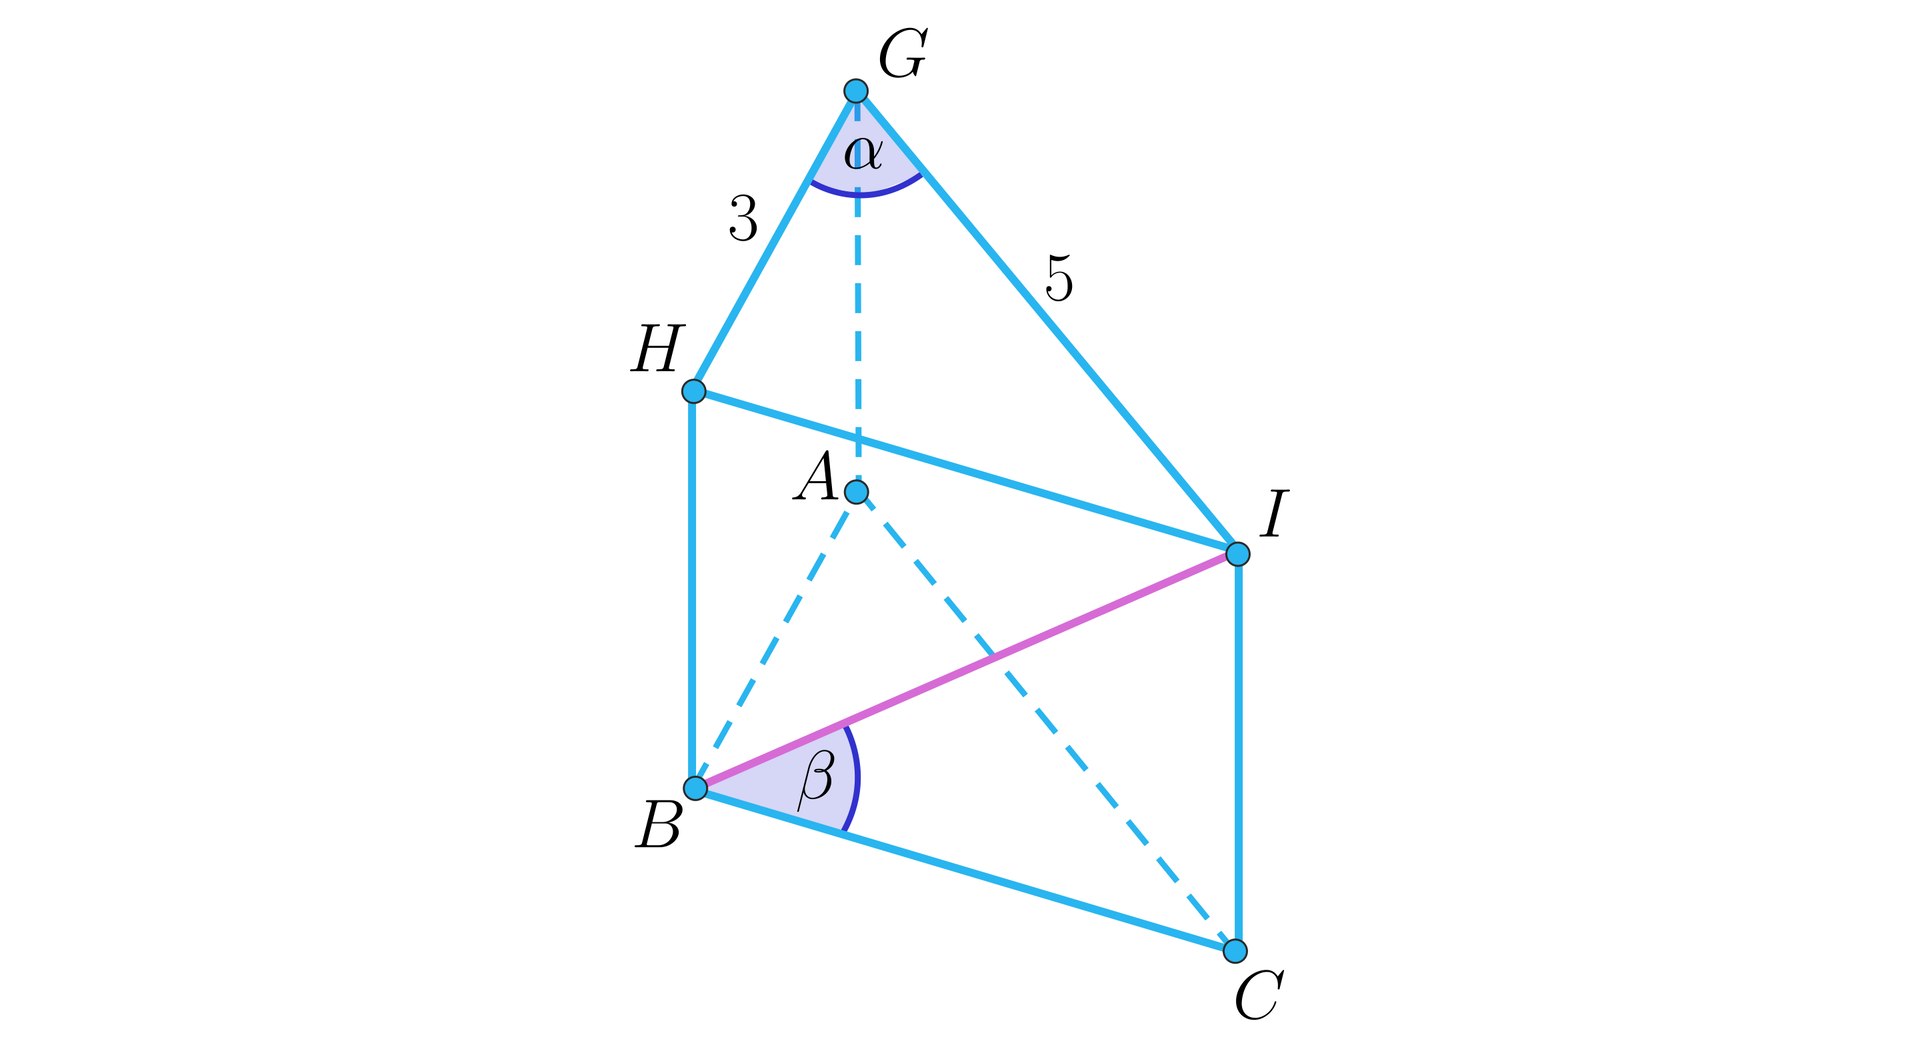 Grafika przedstawia graniastosłup prosty o podstawie trójkąta, gdzie wierzchołki dolnej podstawy to A, B, C a wierzchołki górnej podstawy to G, H, I. W graniastosłupie zaznaczono kąt alfa pomiędzy krawędziami podstawy GH oraz GI. W graniastosłupie zaznaczono również kąt beta pomiędzy przekątną ściany bocznej BI i krawędzią podstawy BC. Jedno z ramion podstawy GH ma długość 3, a bok GI ma długość pięć.